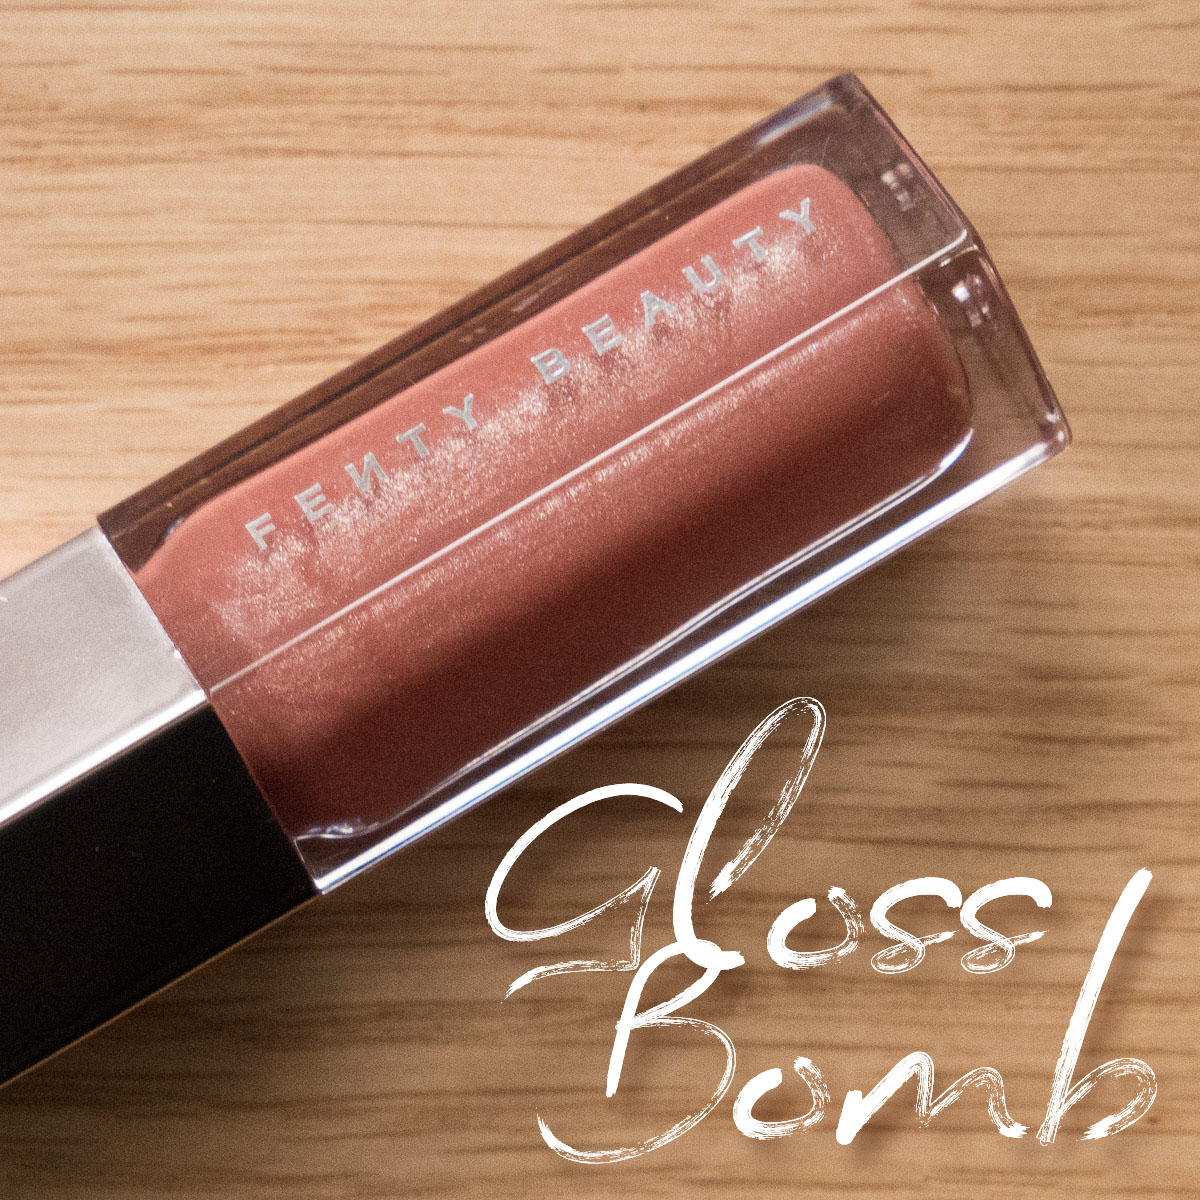 Fenty Beauty By Rihanna Fenty Glow Gloss Bomb Lipgloss Review Magimania Beauty Blog